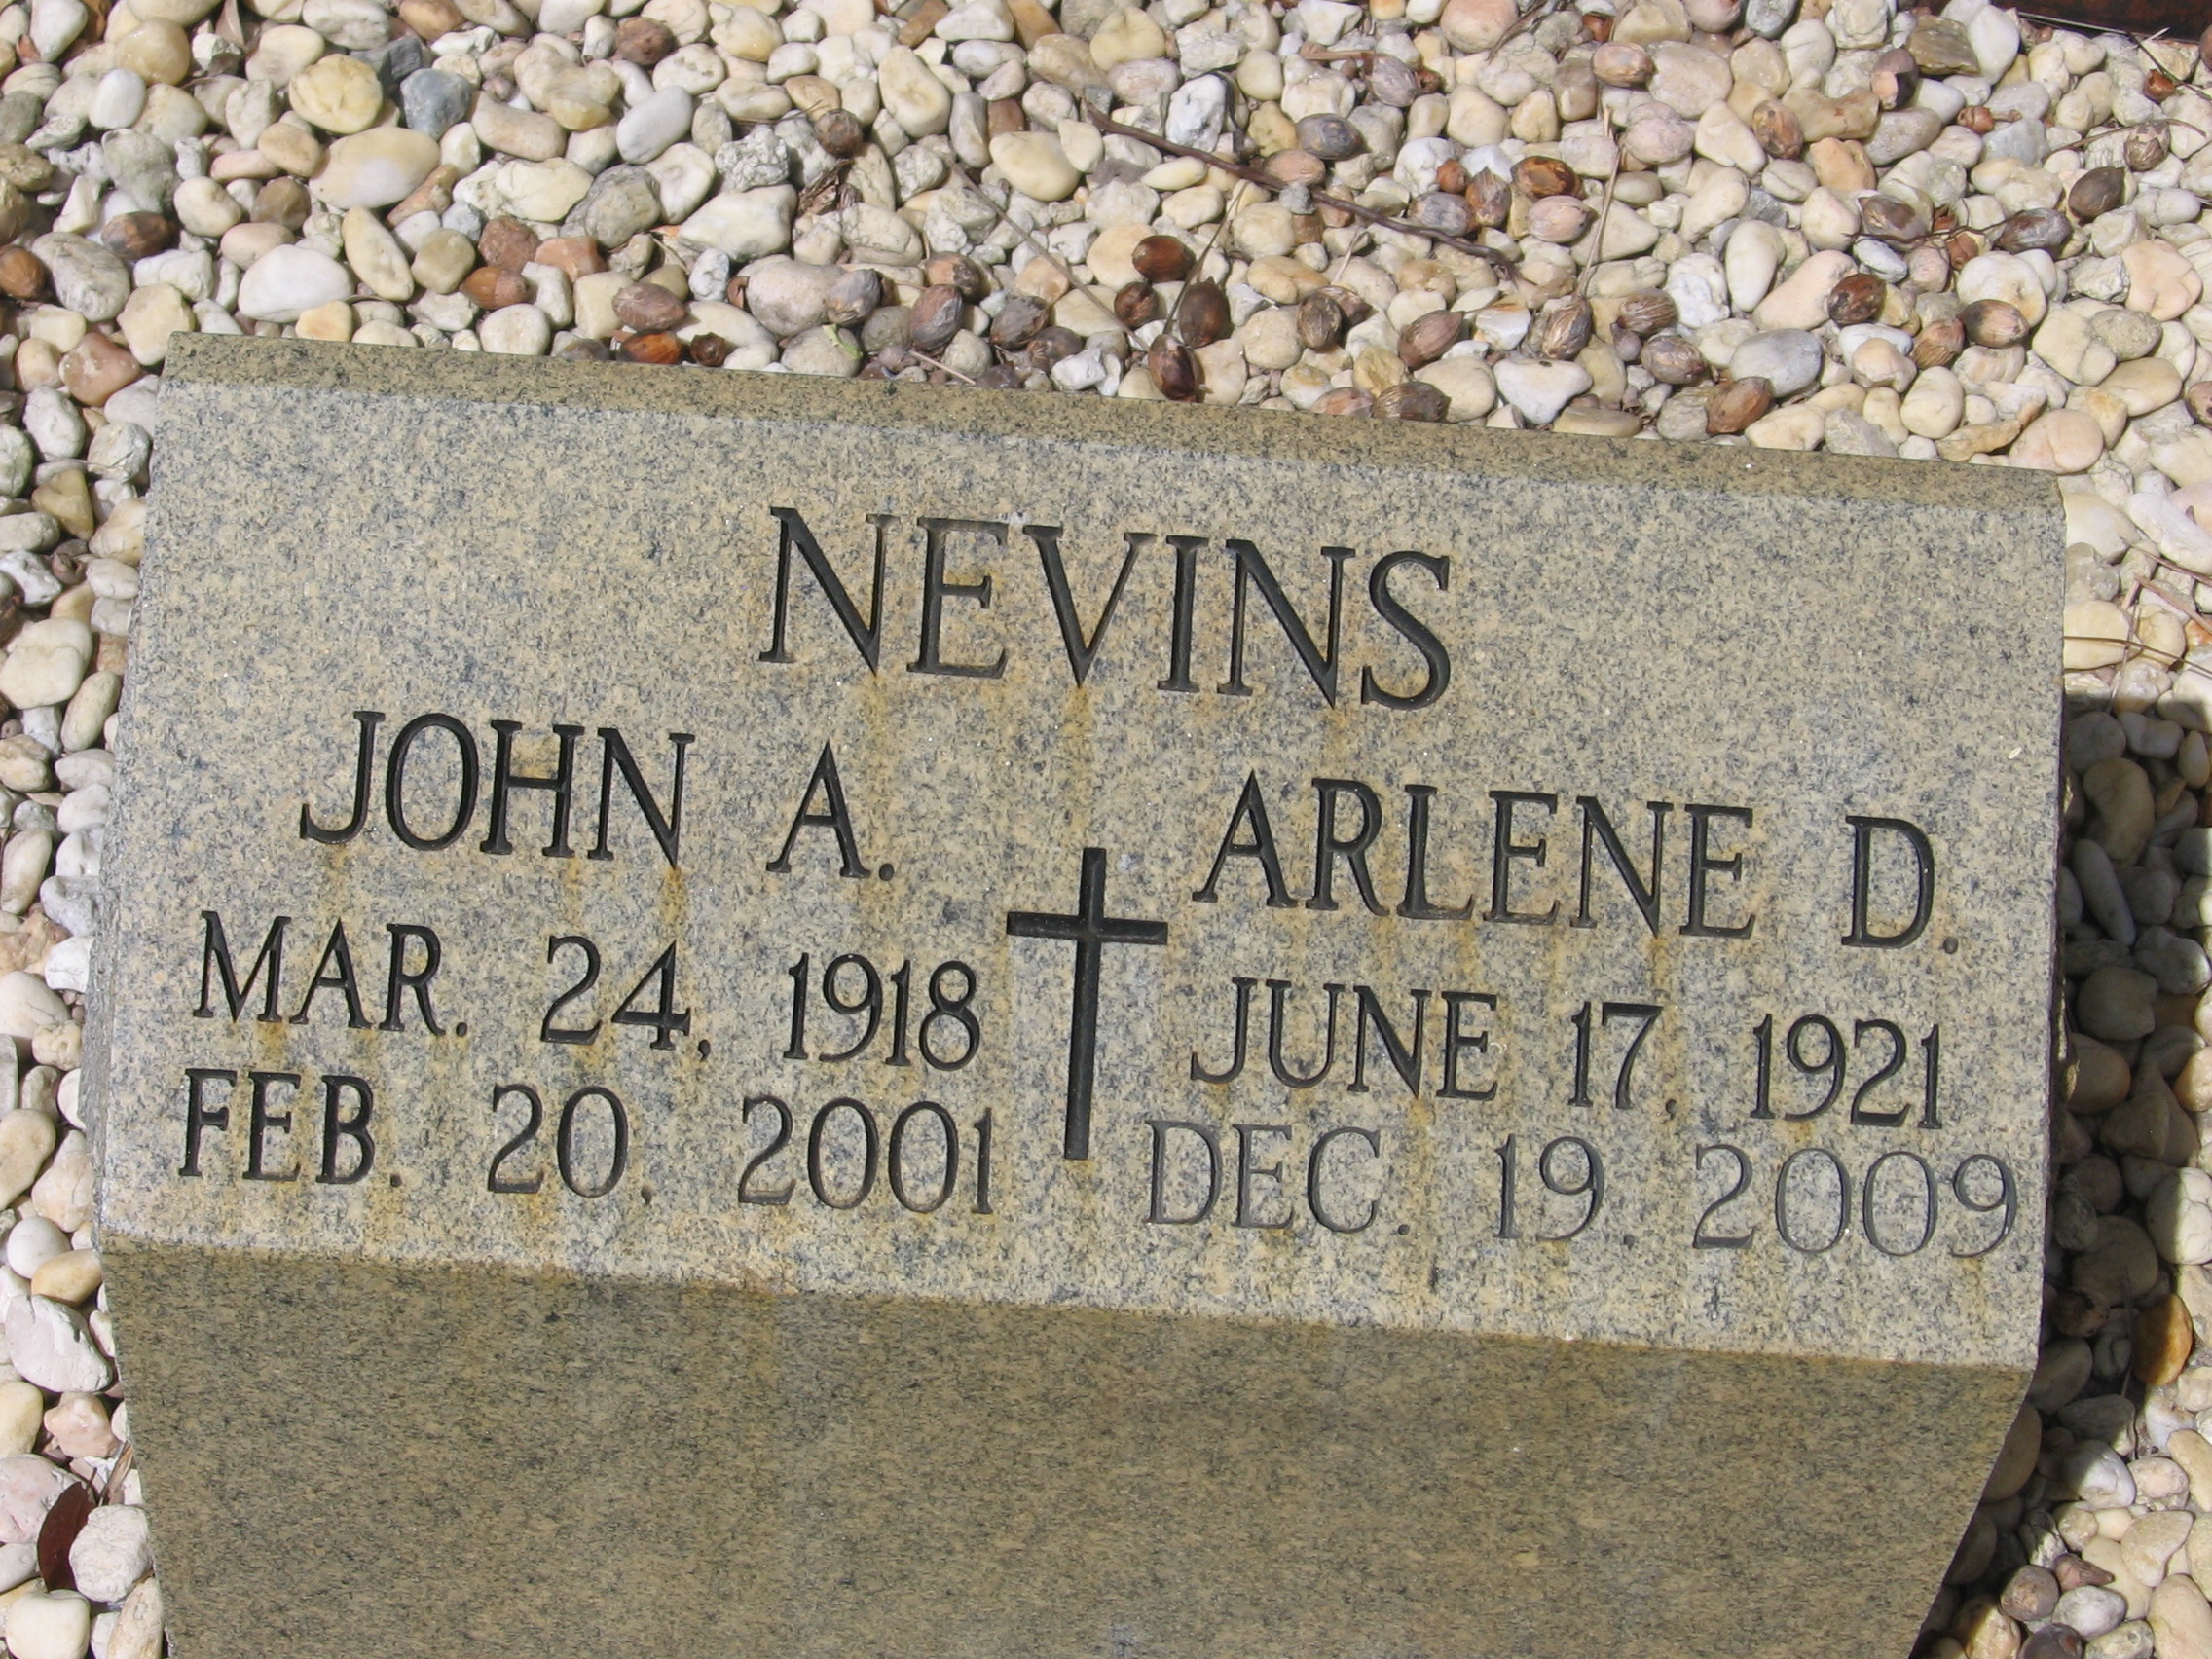 John A Nevins